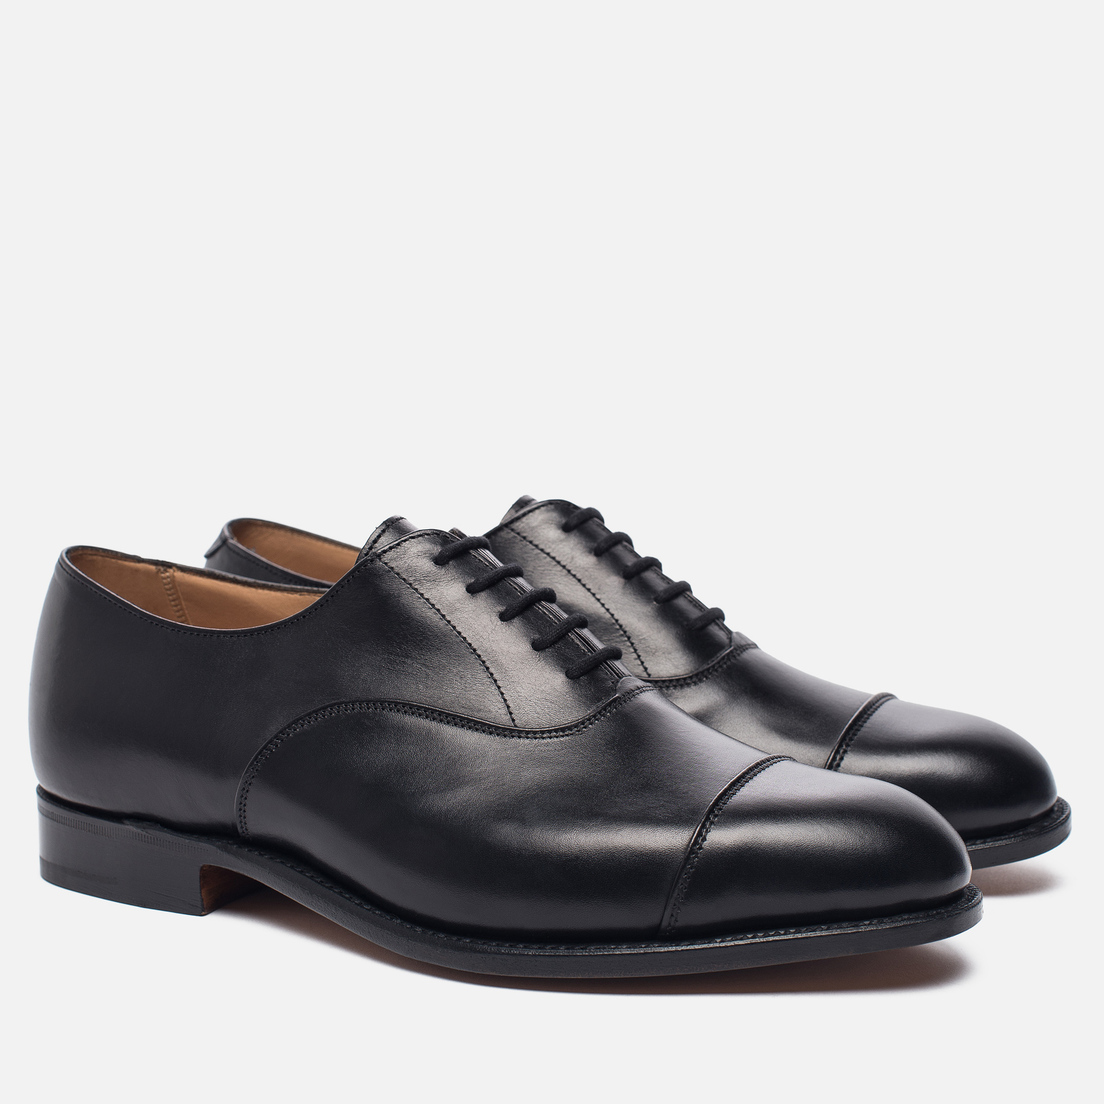 Tricker's Мужские ботинки Henley Sole Leather